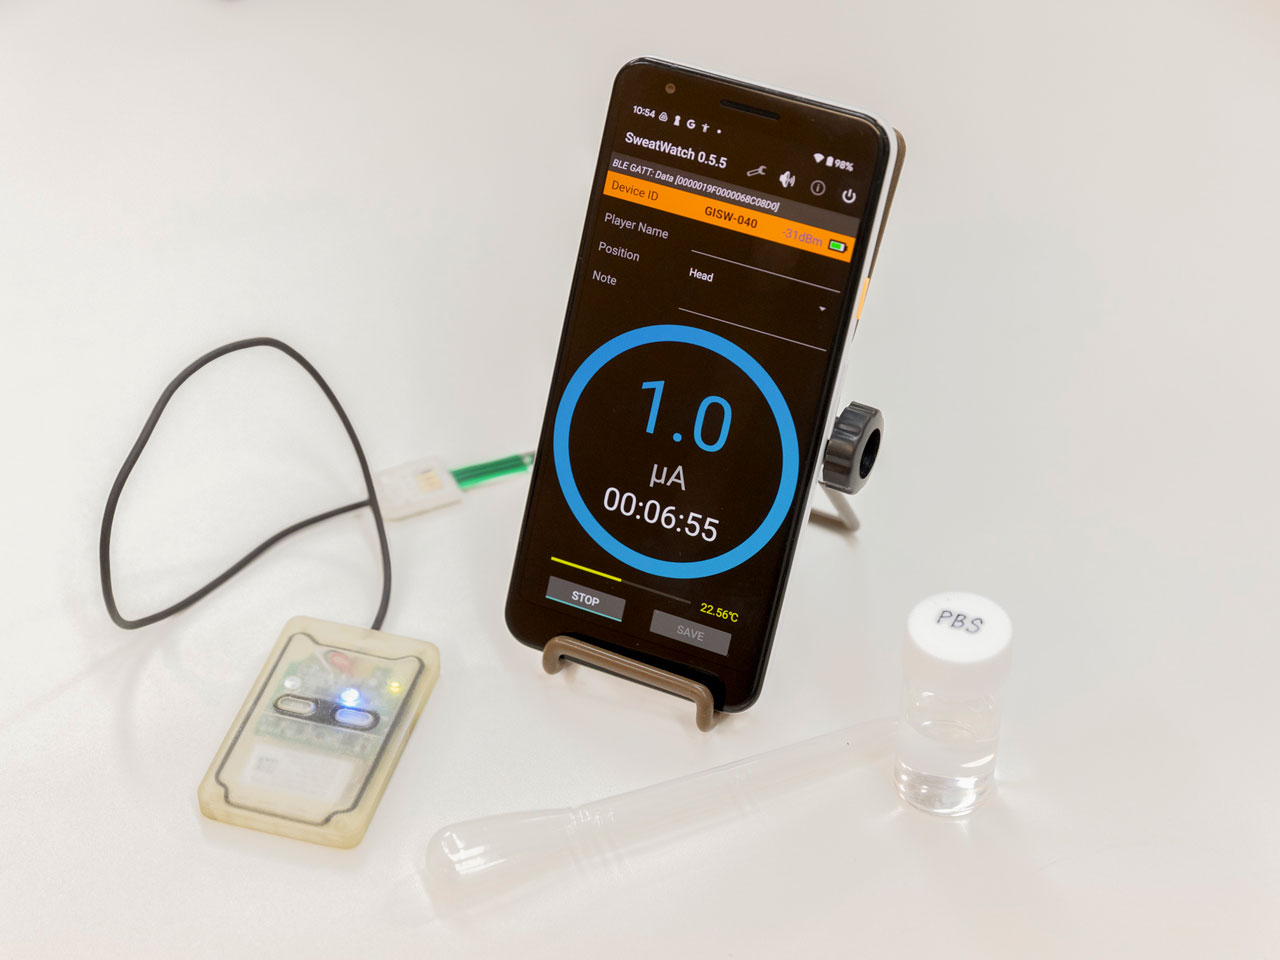 同社が開発を手掛ける汗乳酸測定デバイス。多くのパートナー企業との協業により、医療・スポーツをはじめとしたあらゆる分野で実証実験を行っている。